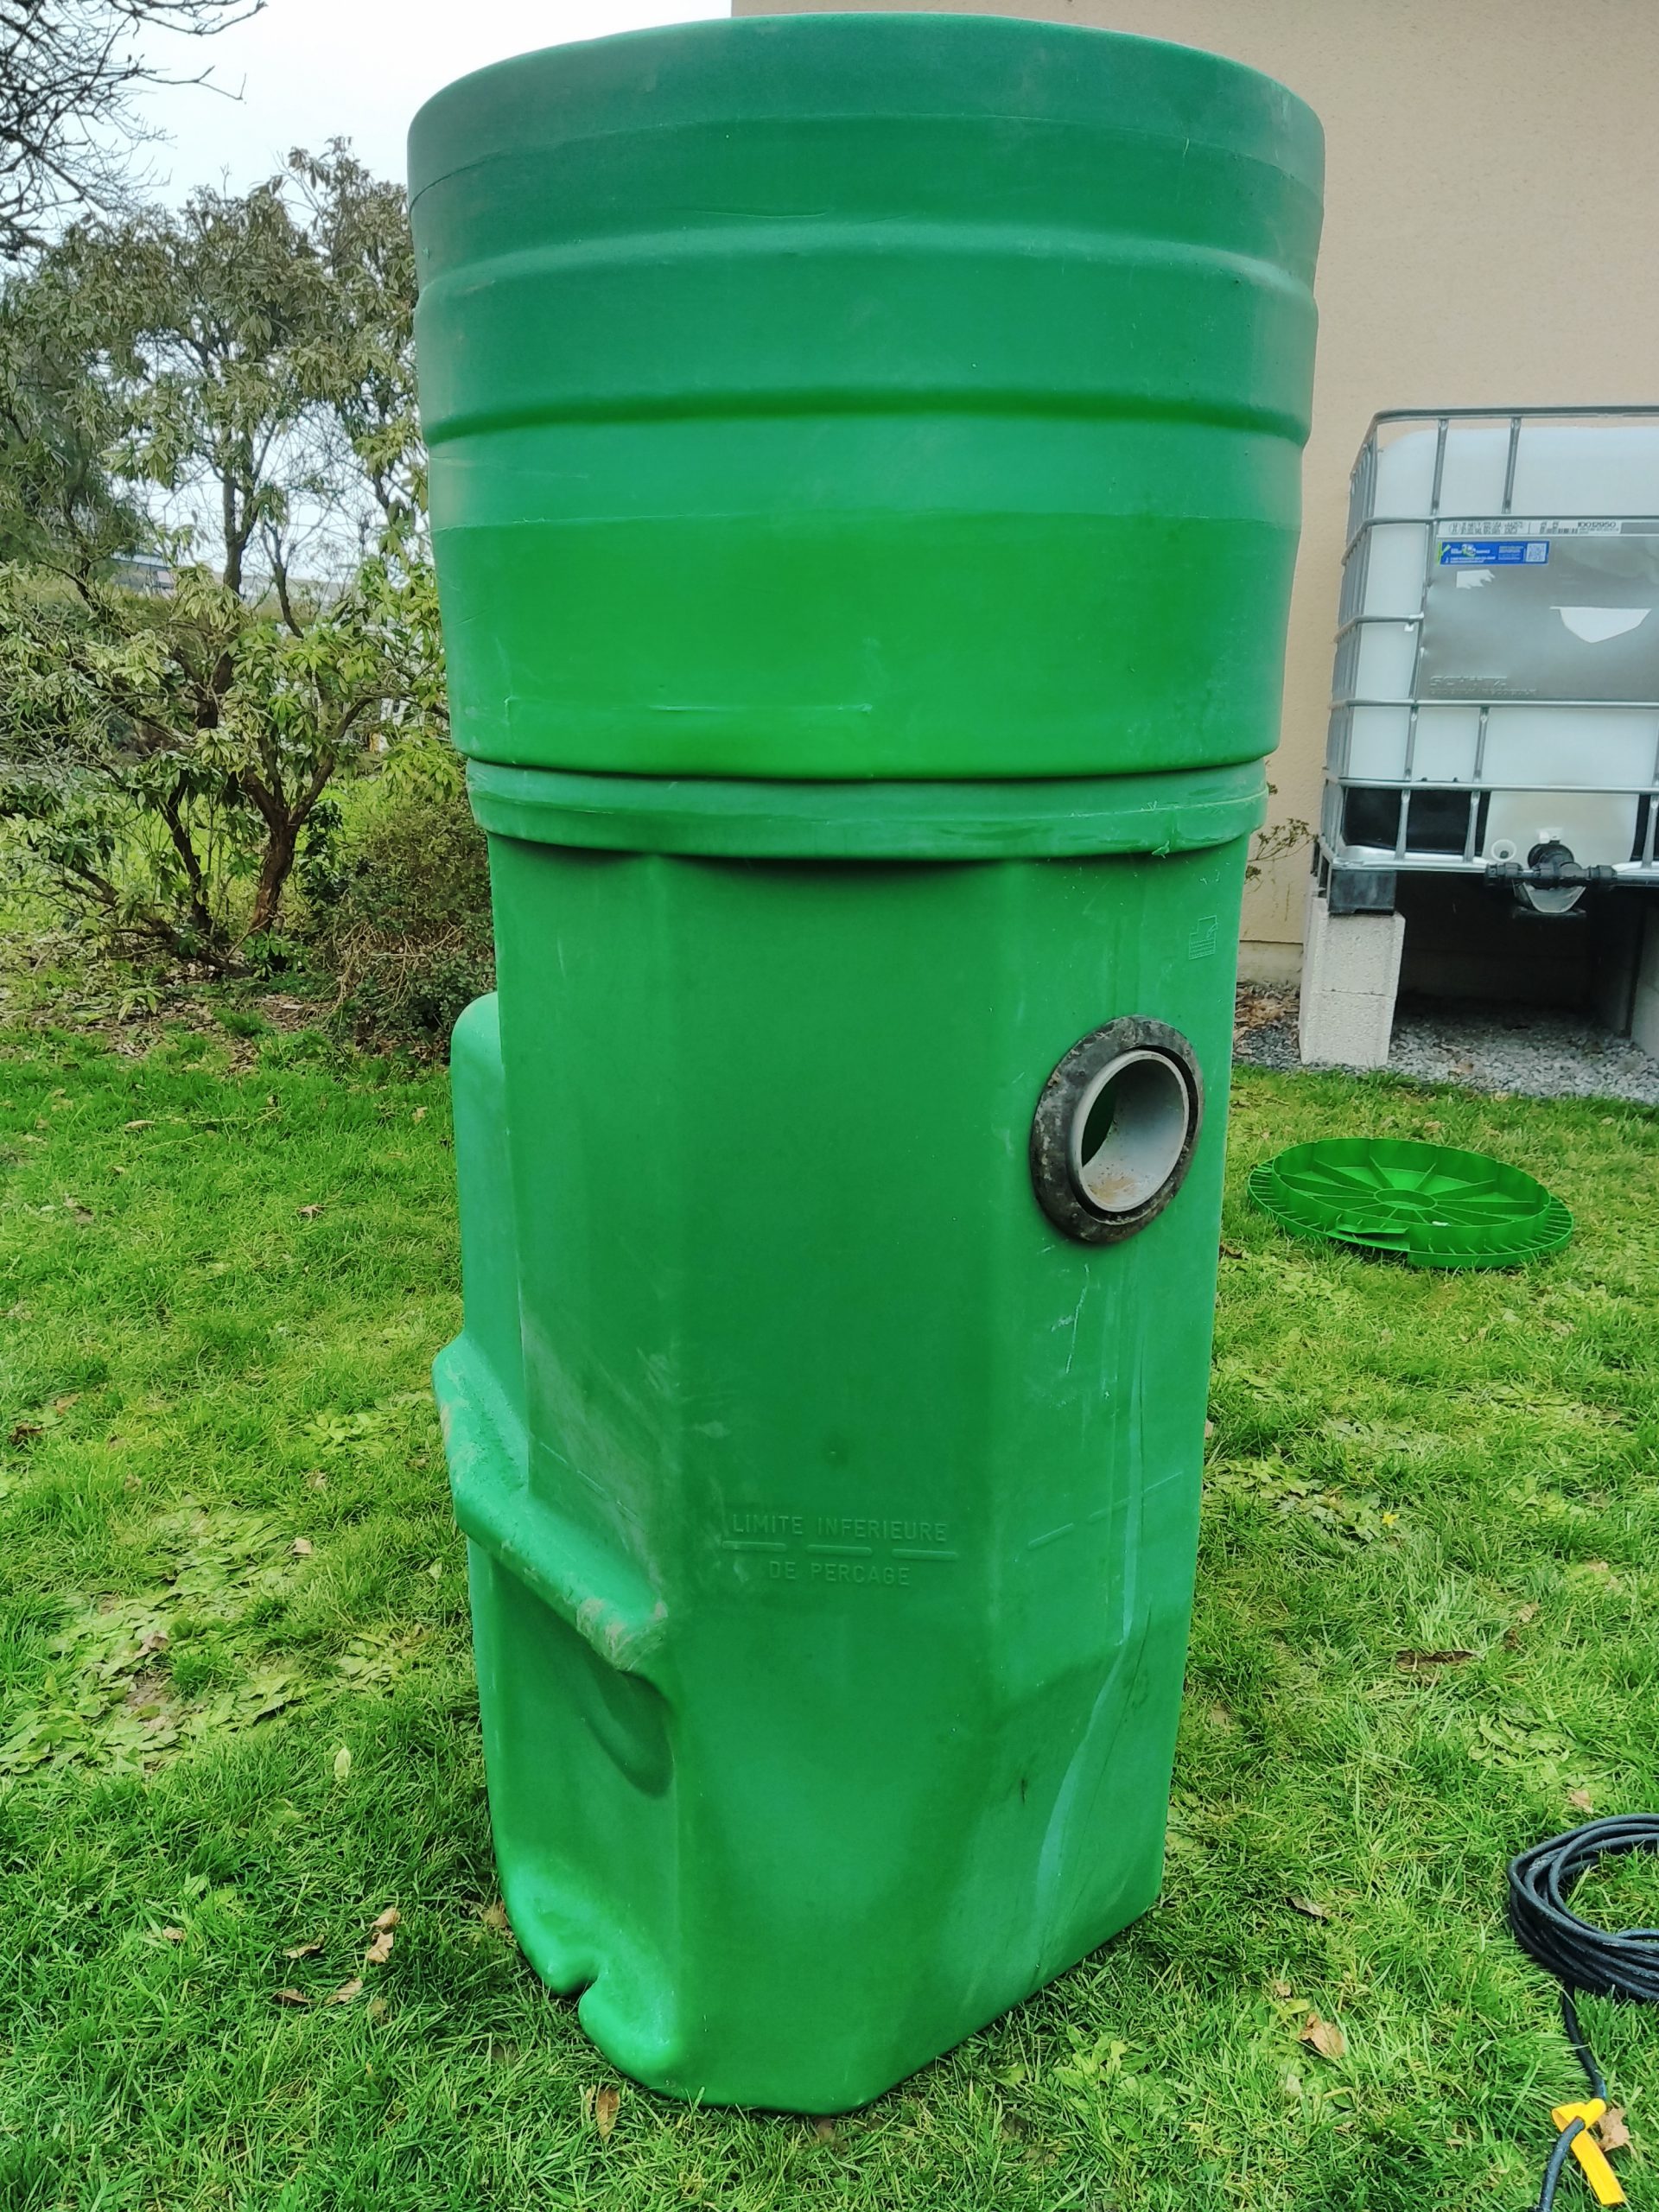 Pompe de relevage pour eaux chargées domestiques SEMISOM 290